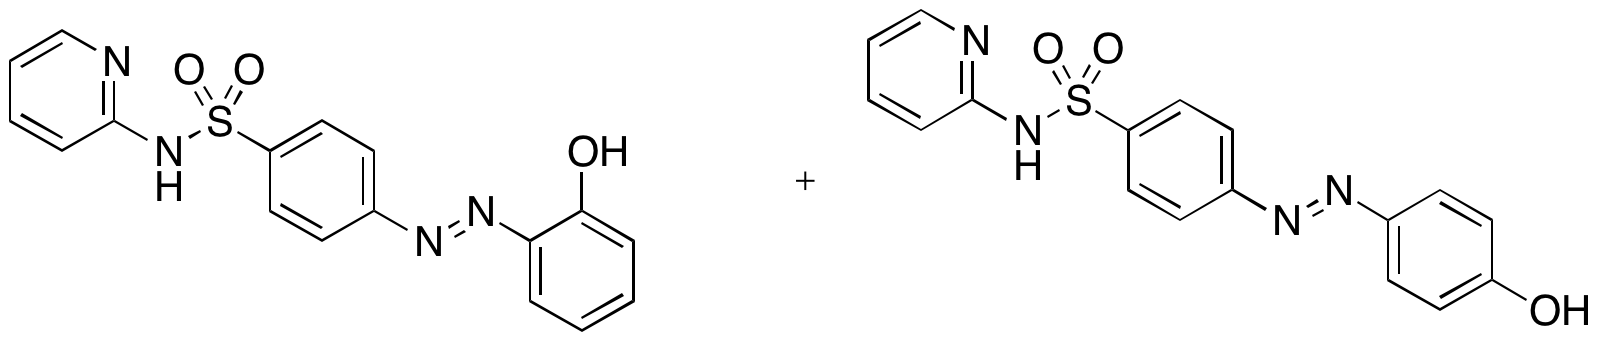 2-[[4-(2-Pyridylsulfamoyl)phenyl]azo]hydroxybenzene4-[[4-(2-Pyridylsulfamoyl)phenyl]azo]hydroxybenze